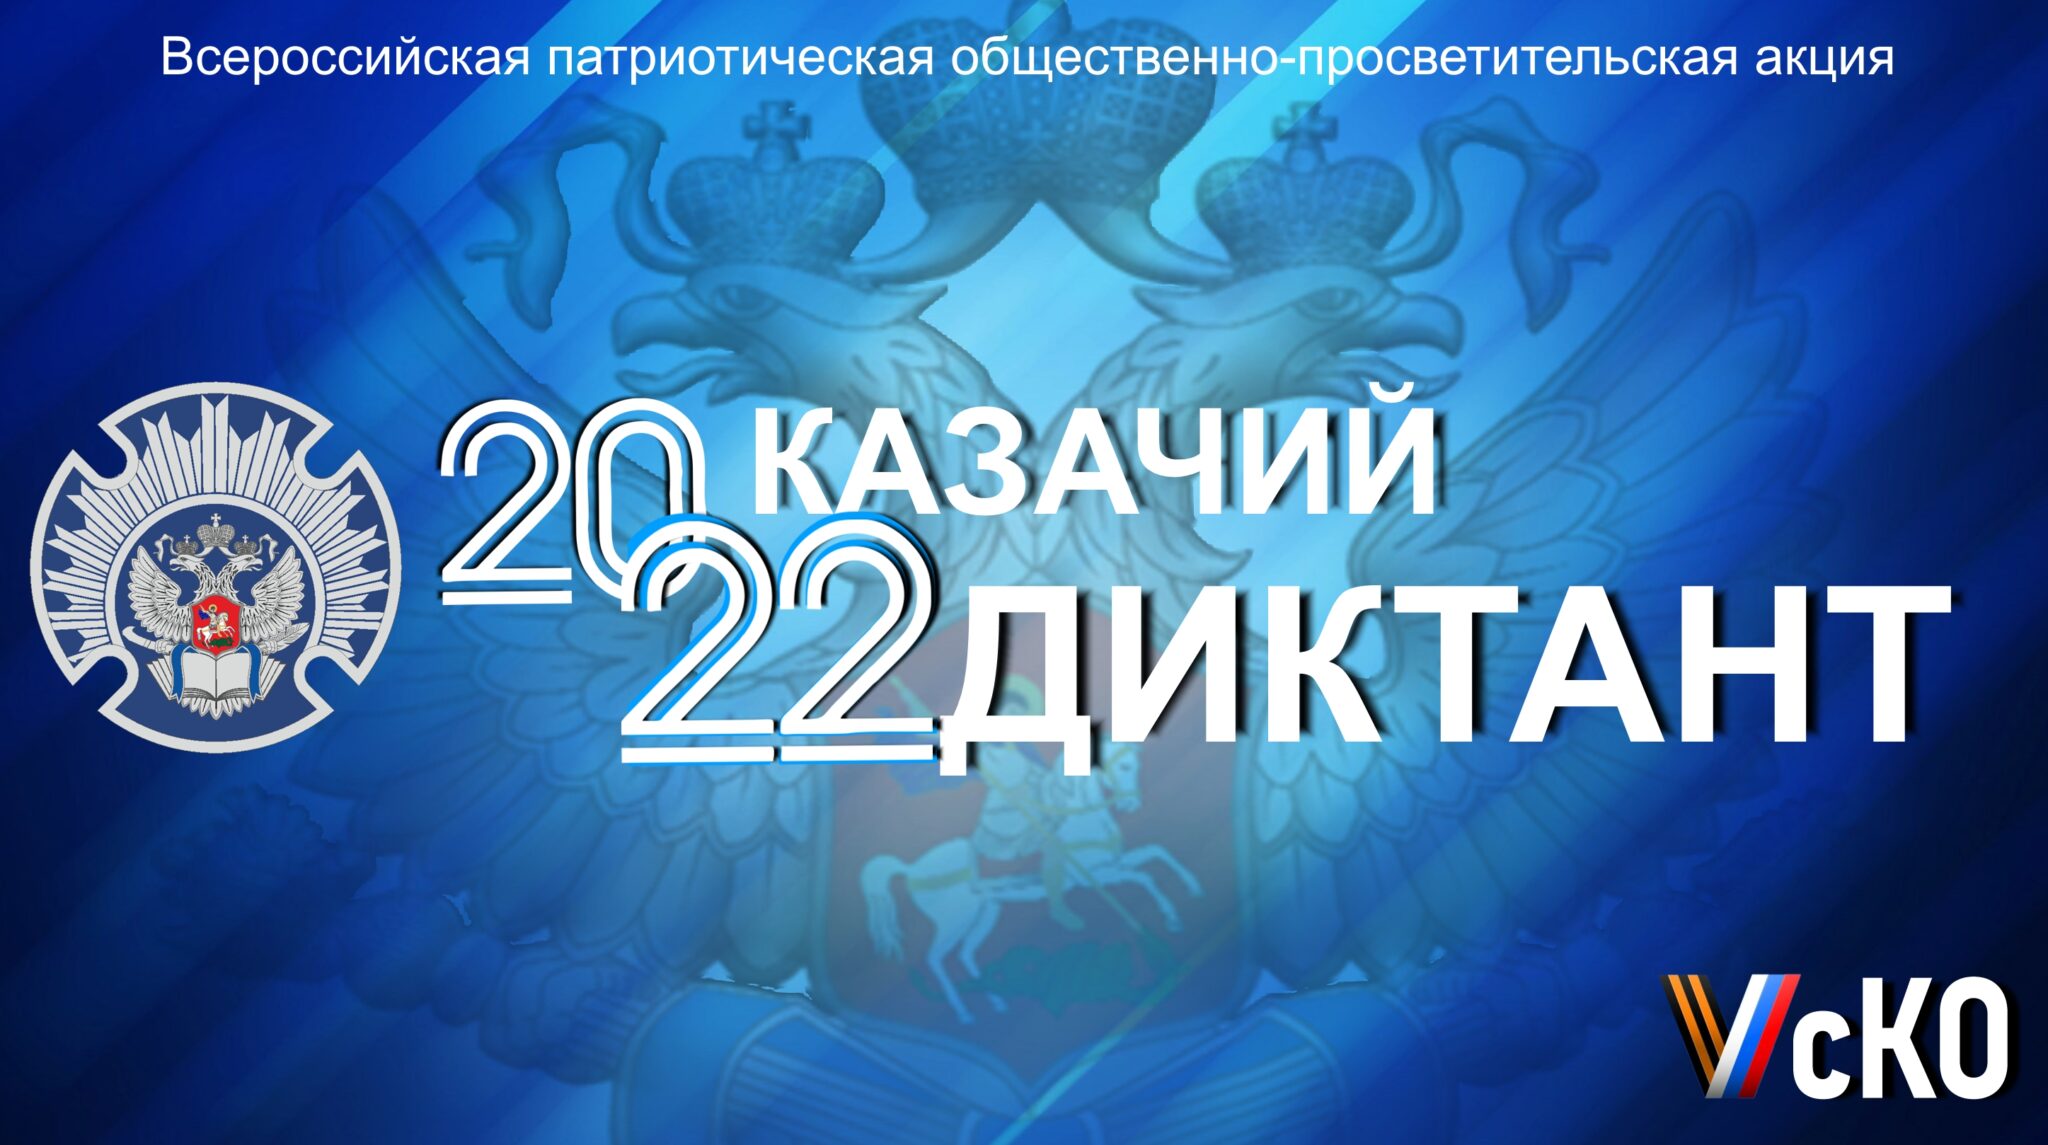 Жители Белгородского района приглашаются принять участие в акции «Казачий диктант – 2022»